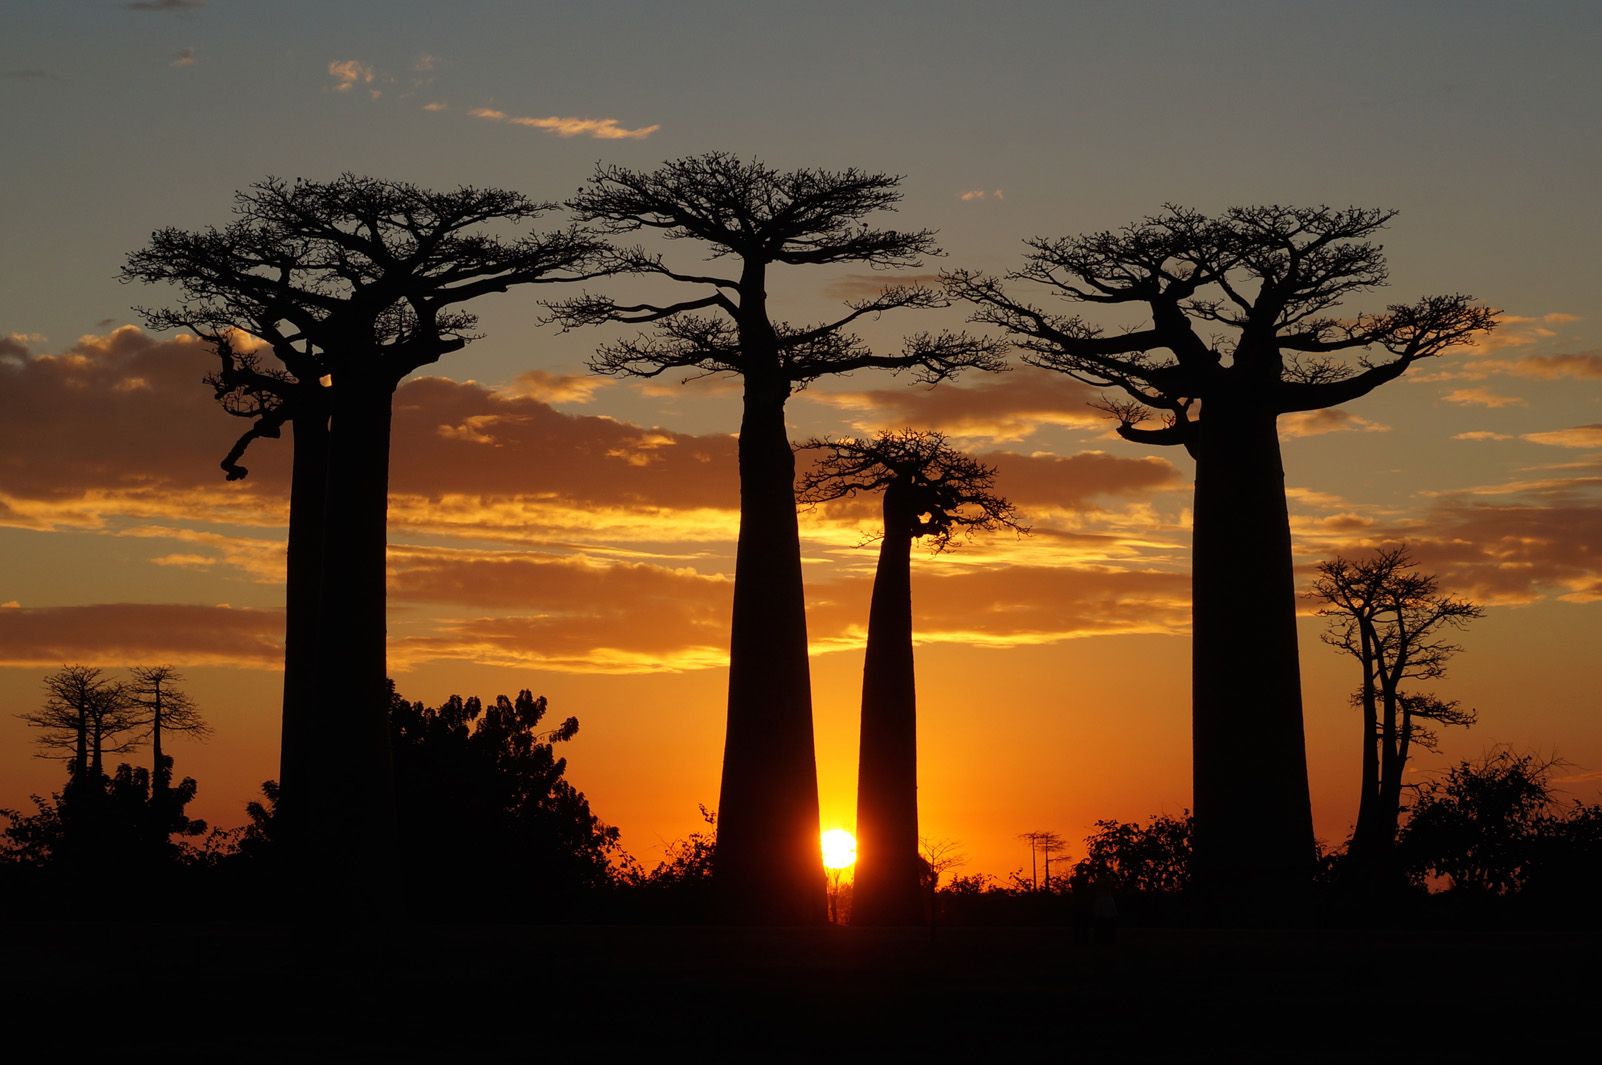 7è Premi Viatges: "Baobabs" a Madagascar. Foto: Elena Maristany Bosch.